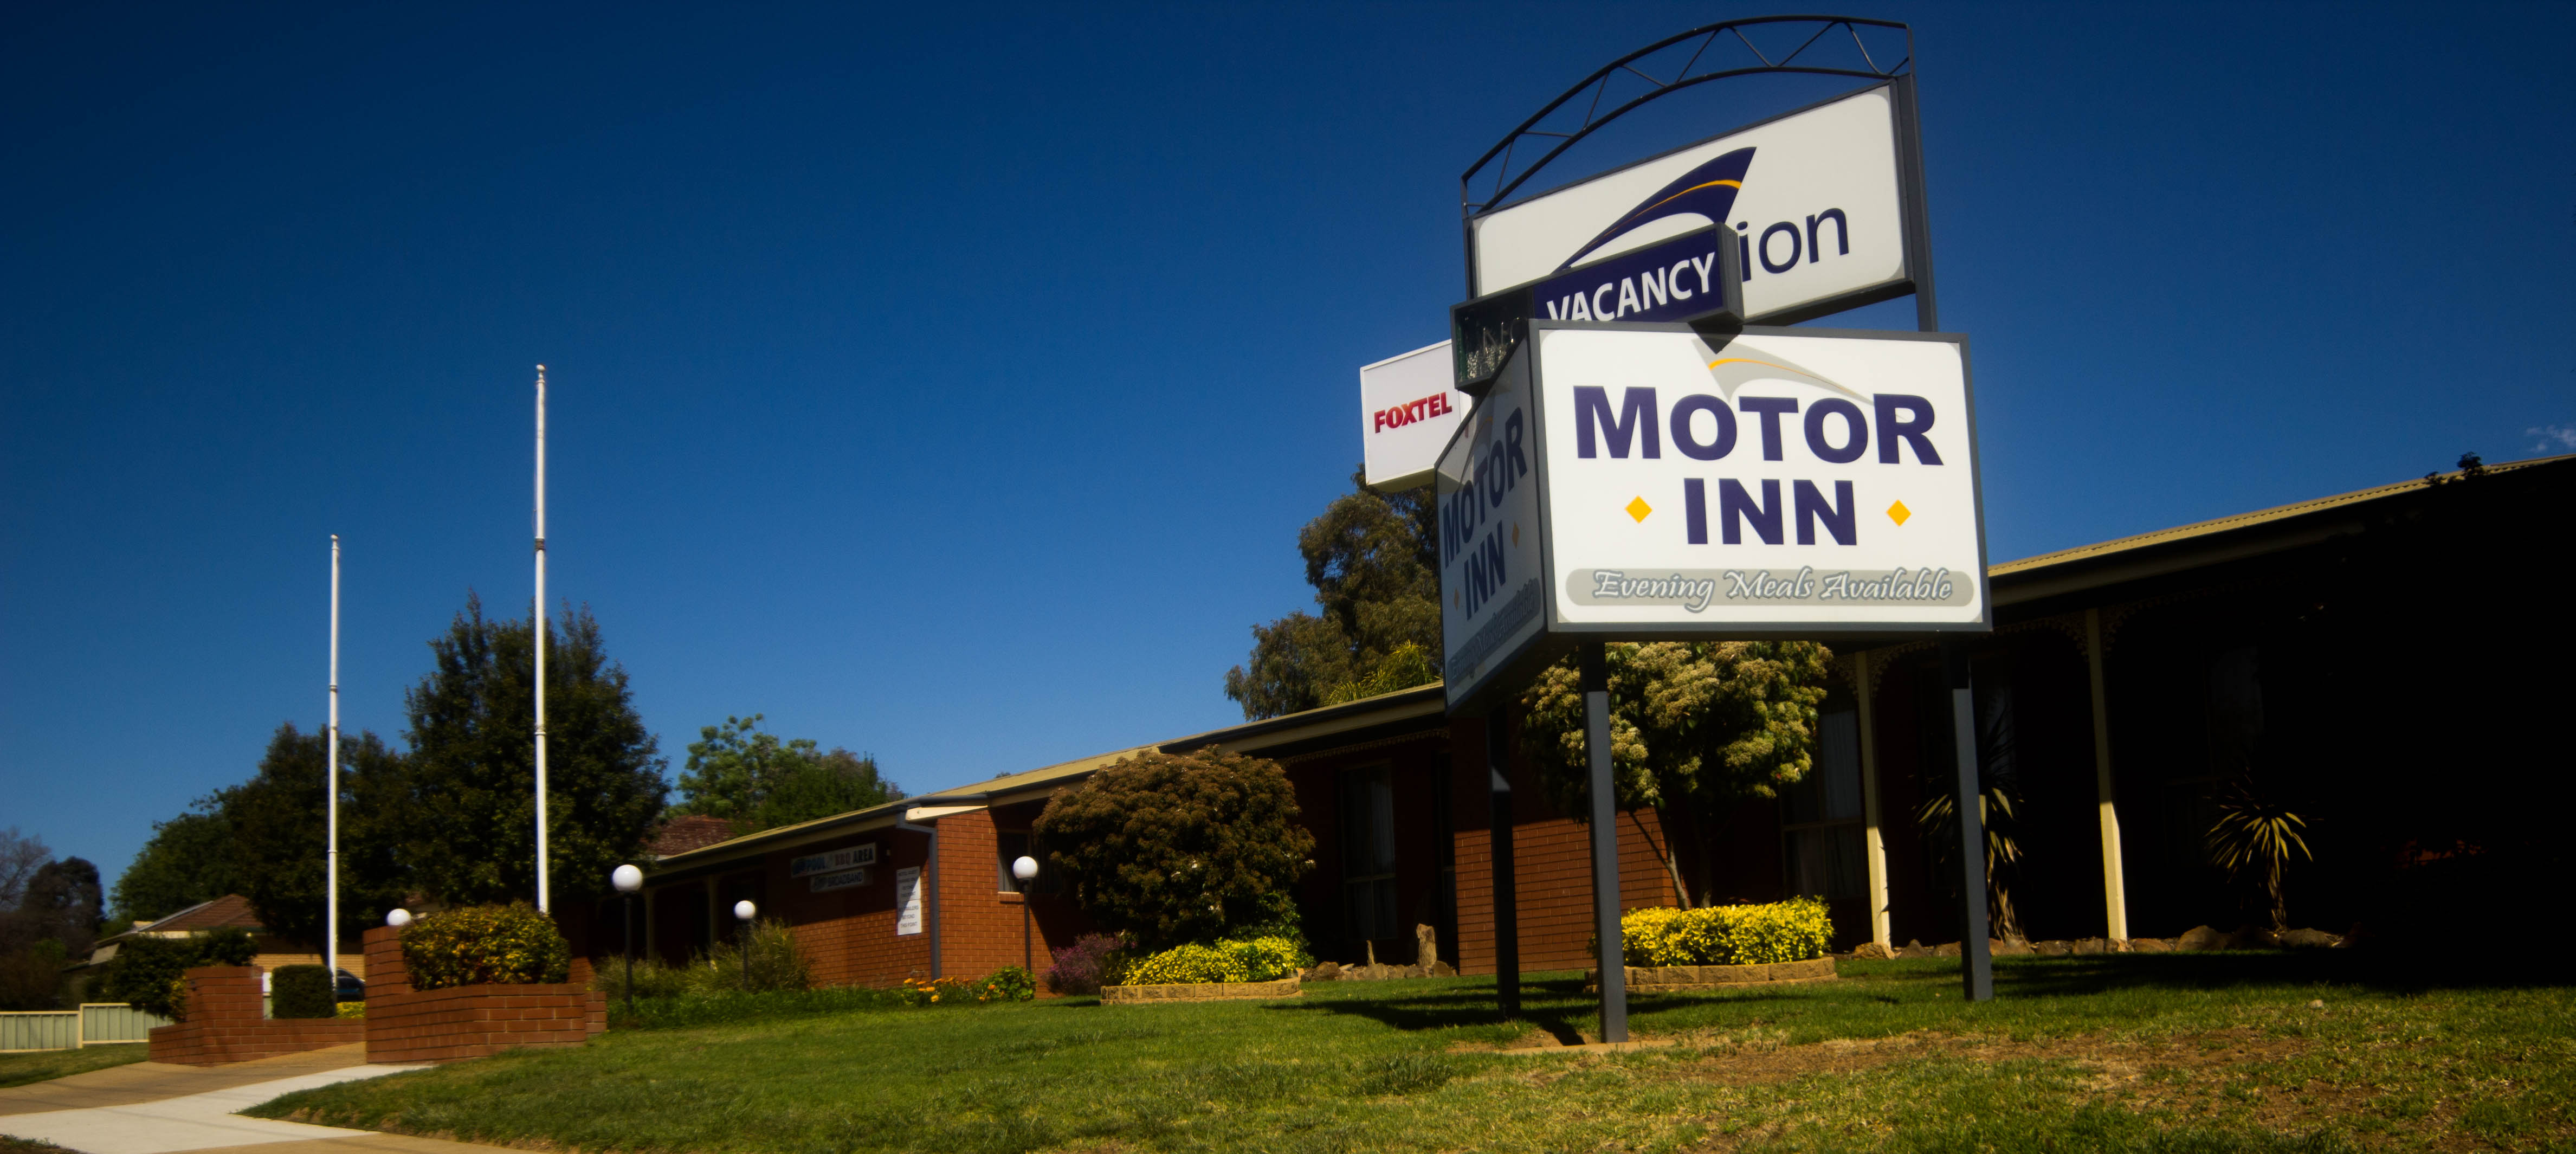 Junction Motor Inn - Accommodation NSW